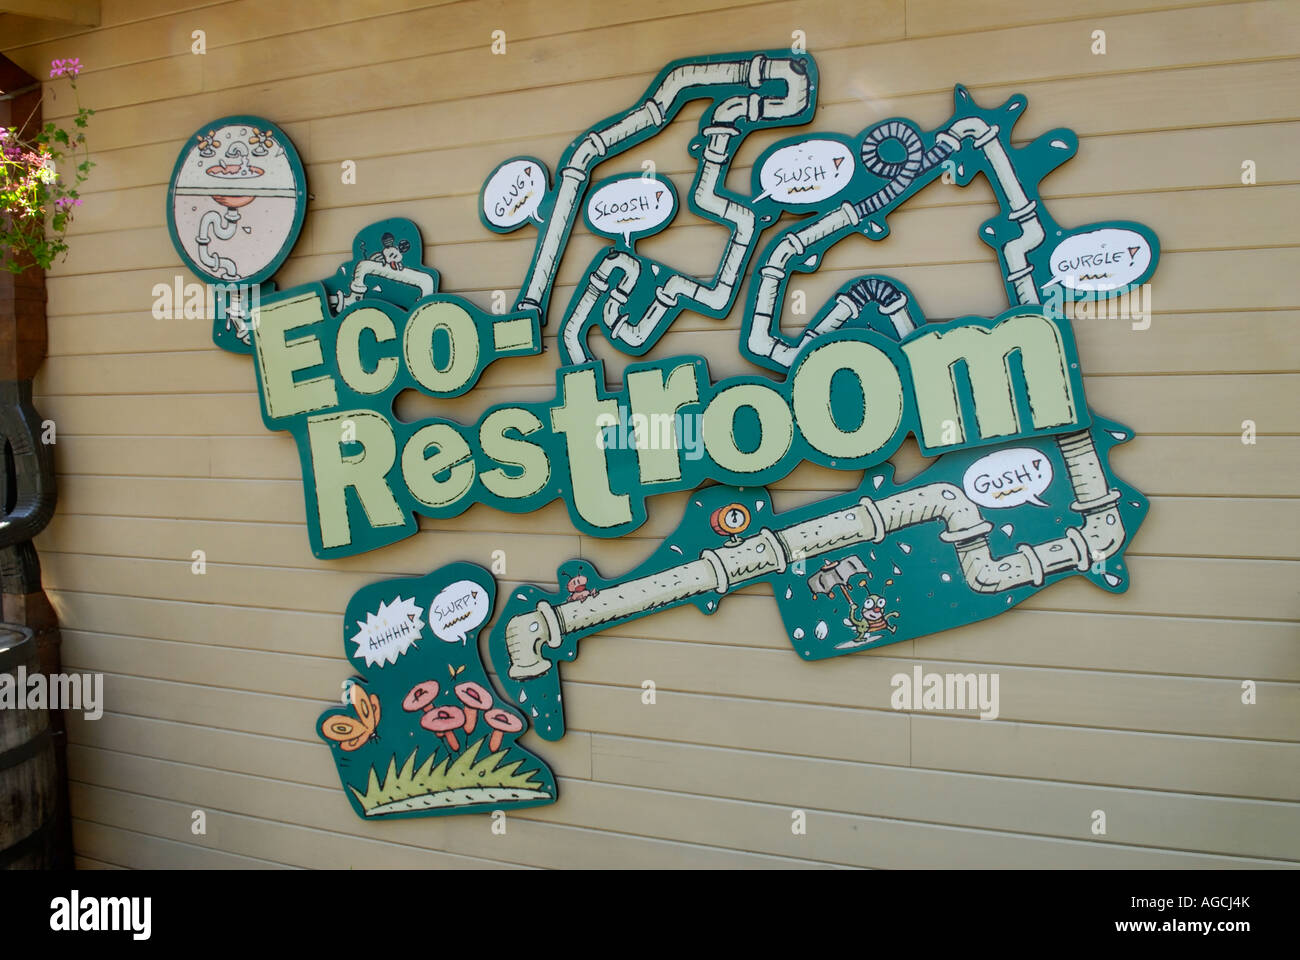 Melden Sie sich außerhalb eine umweltfreundliche Toilette, die Wasserverbrauch und Energieverbrauch reduziert Stockfoto